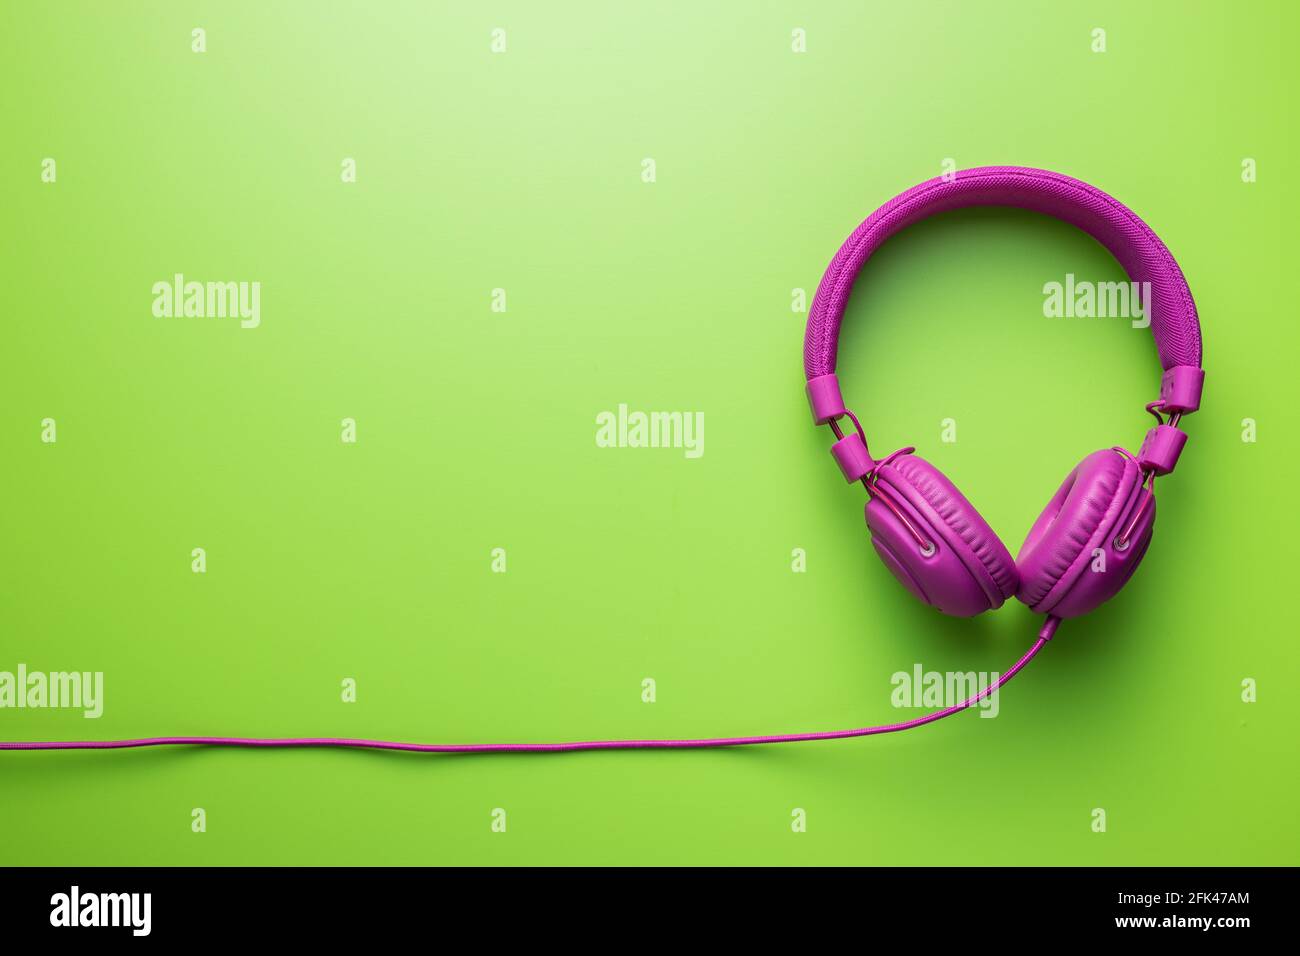 Cuffie stereo con fili rosa su sfondo verde. Vista dall'alto. Foto Stock